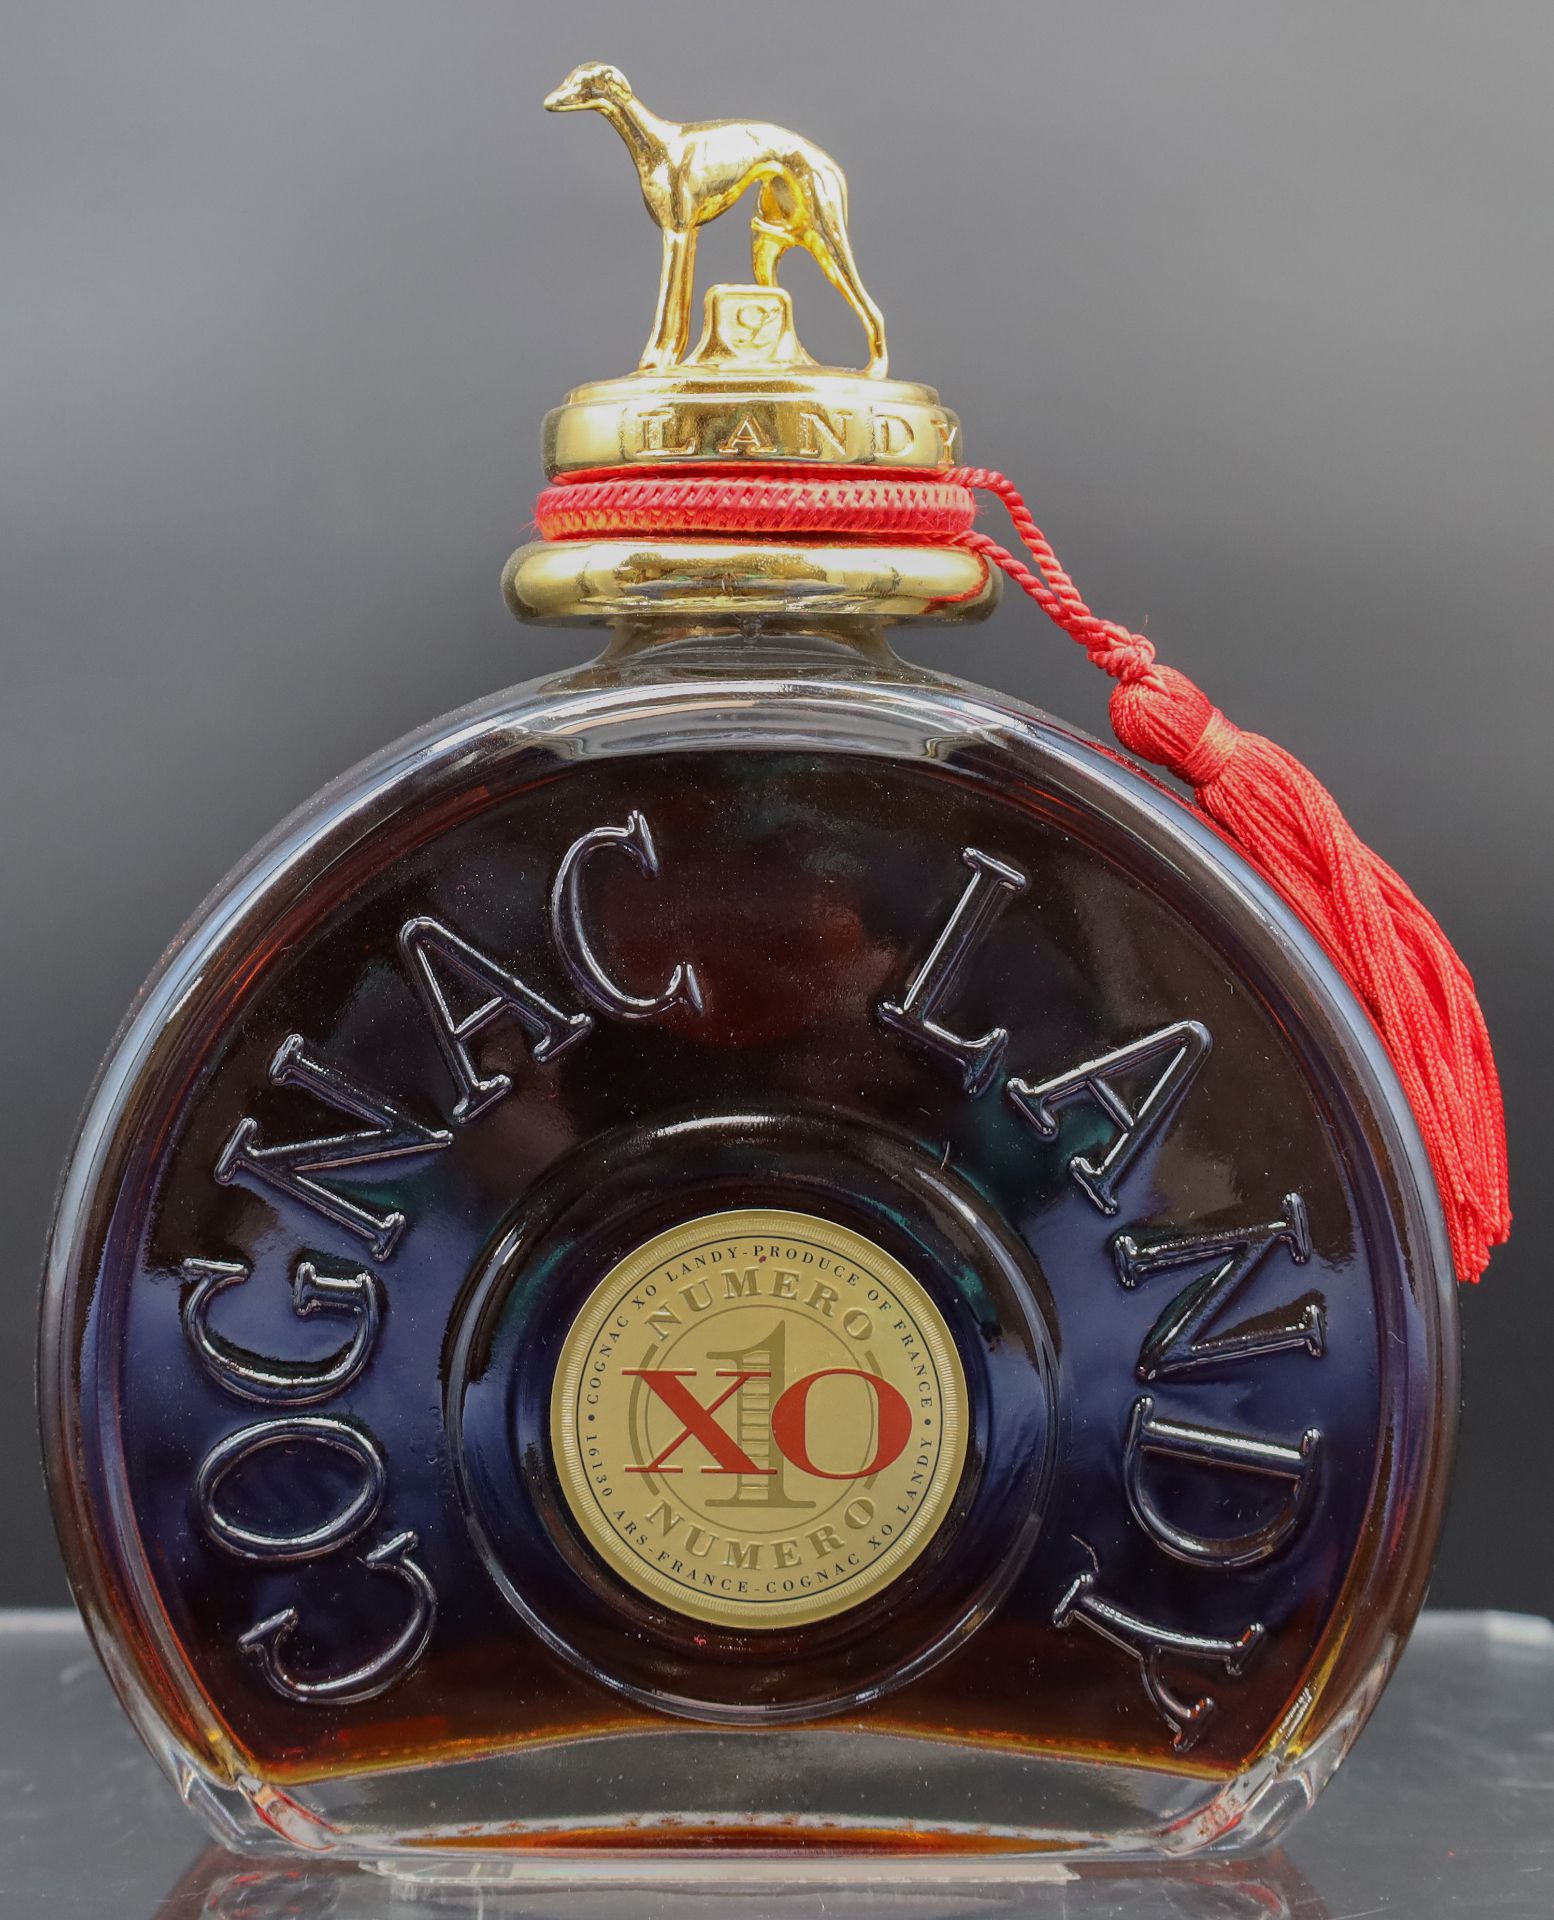 1 Flasche Cognac. LANDY. XO No. 1. Frankreich. - Bild 2 aus 7